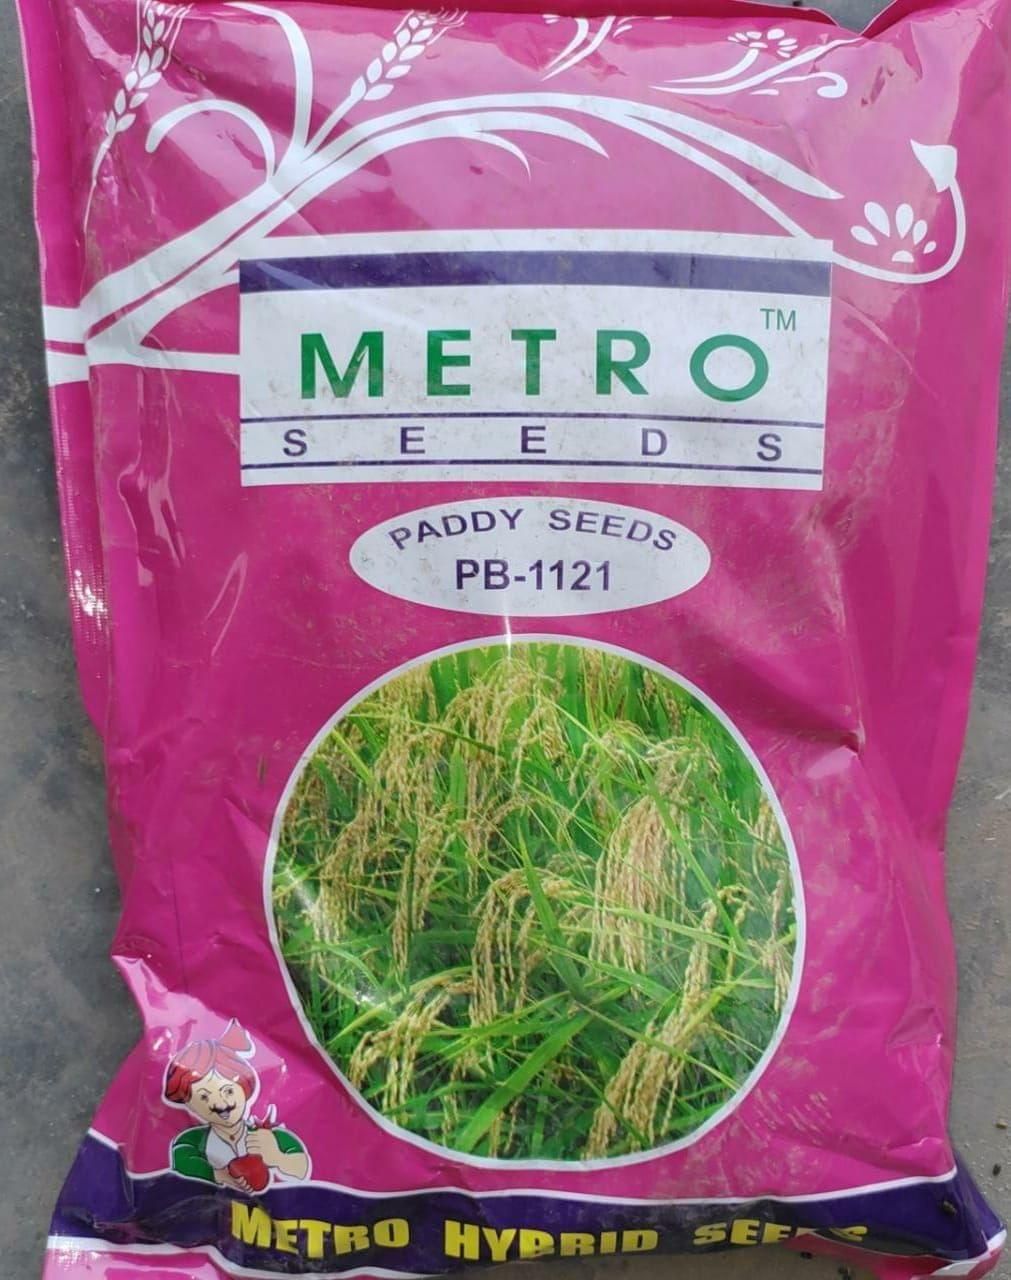 Paddy Seed- PB 1121 (METRO)